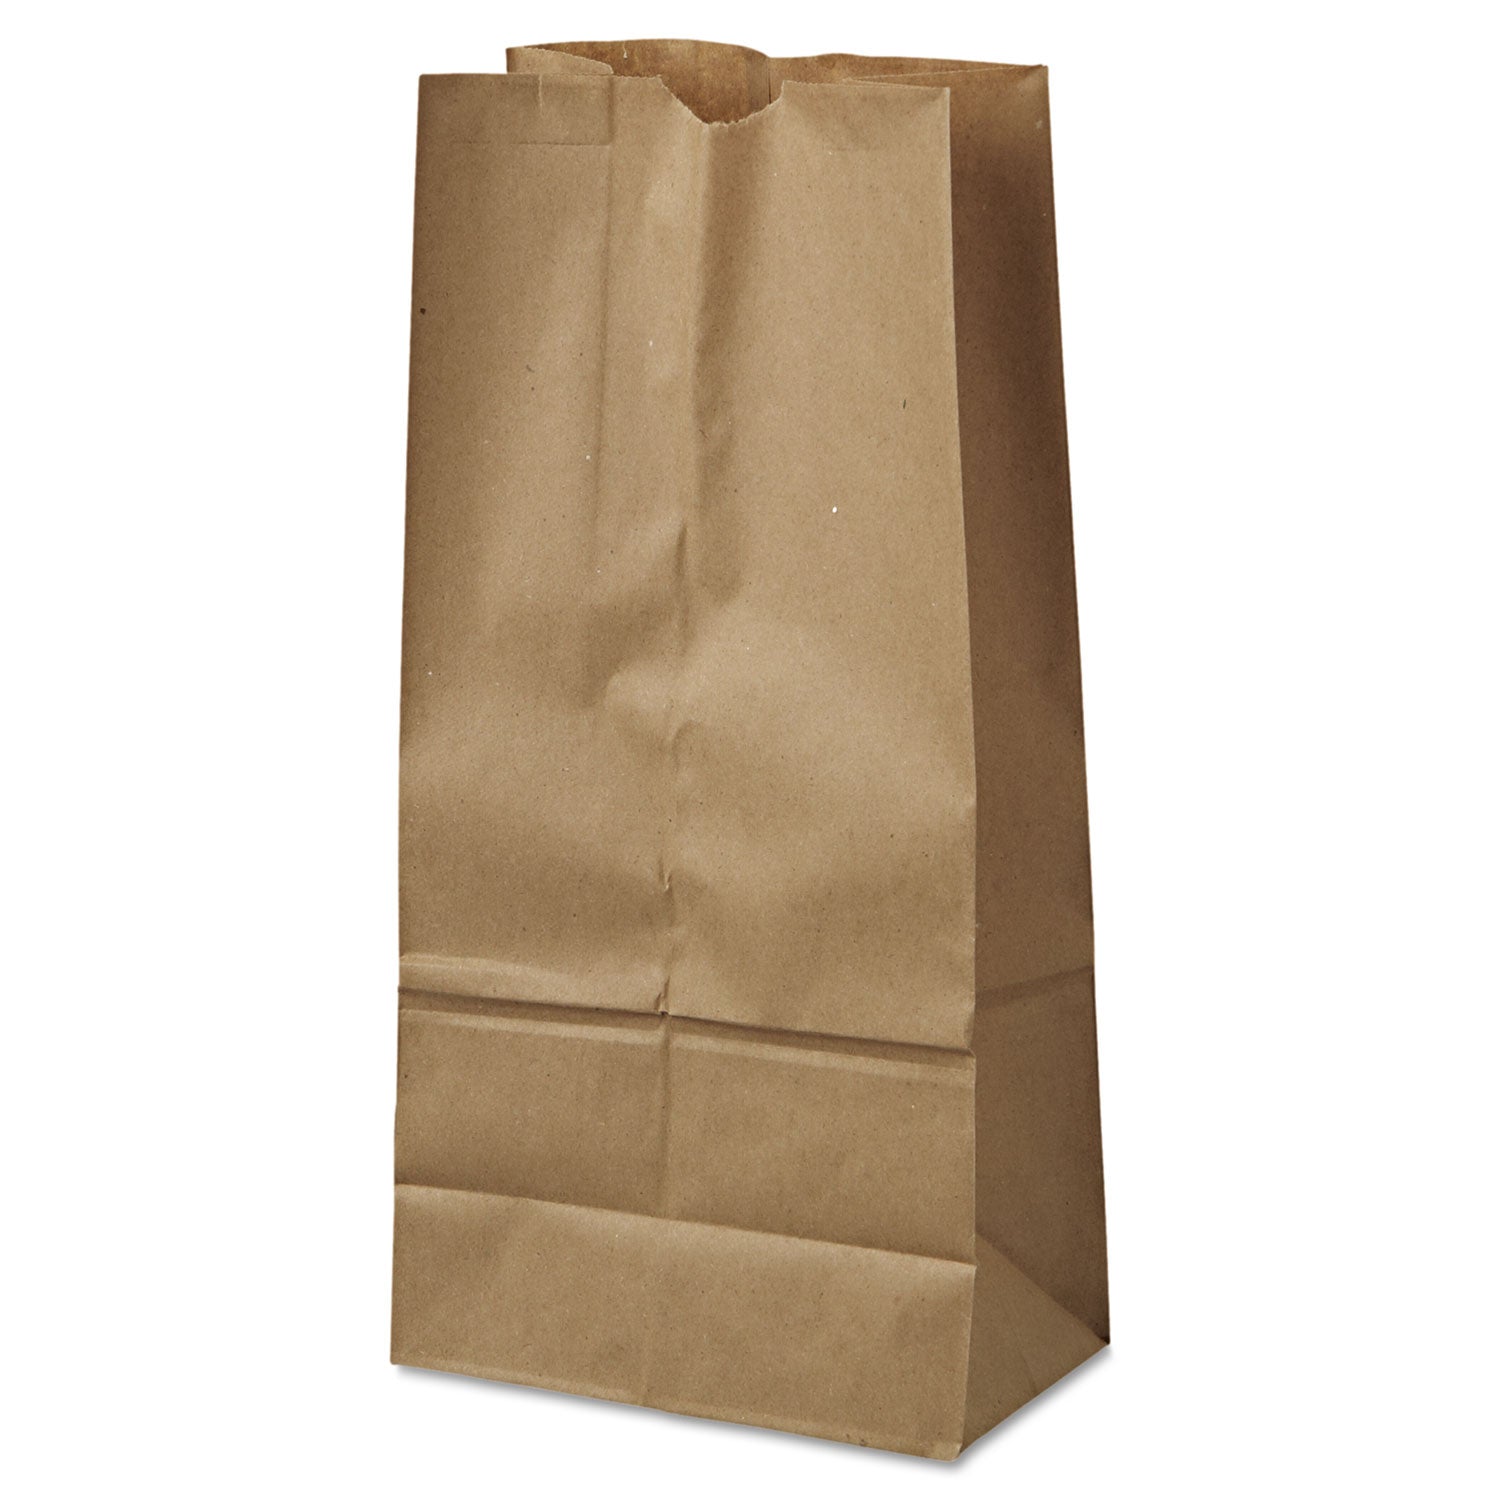 grocery-paper-bags-40-lb-capacity-#16-775-x-481-x-16-kraft-500-bags_baggk16500 - 1